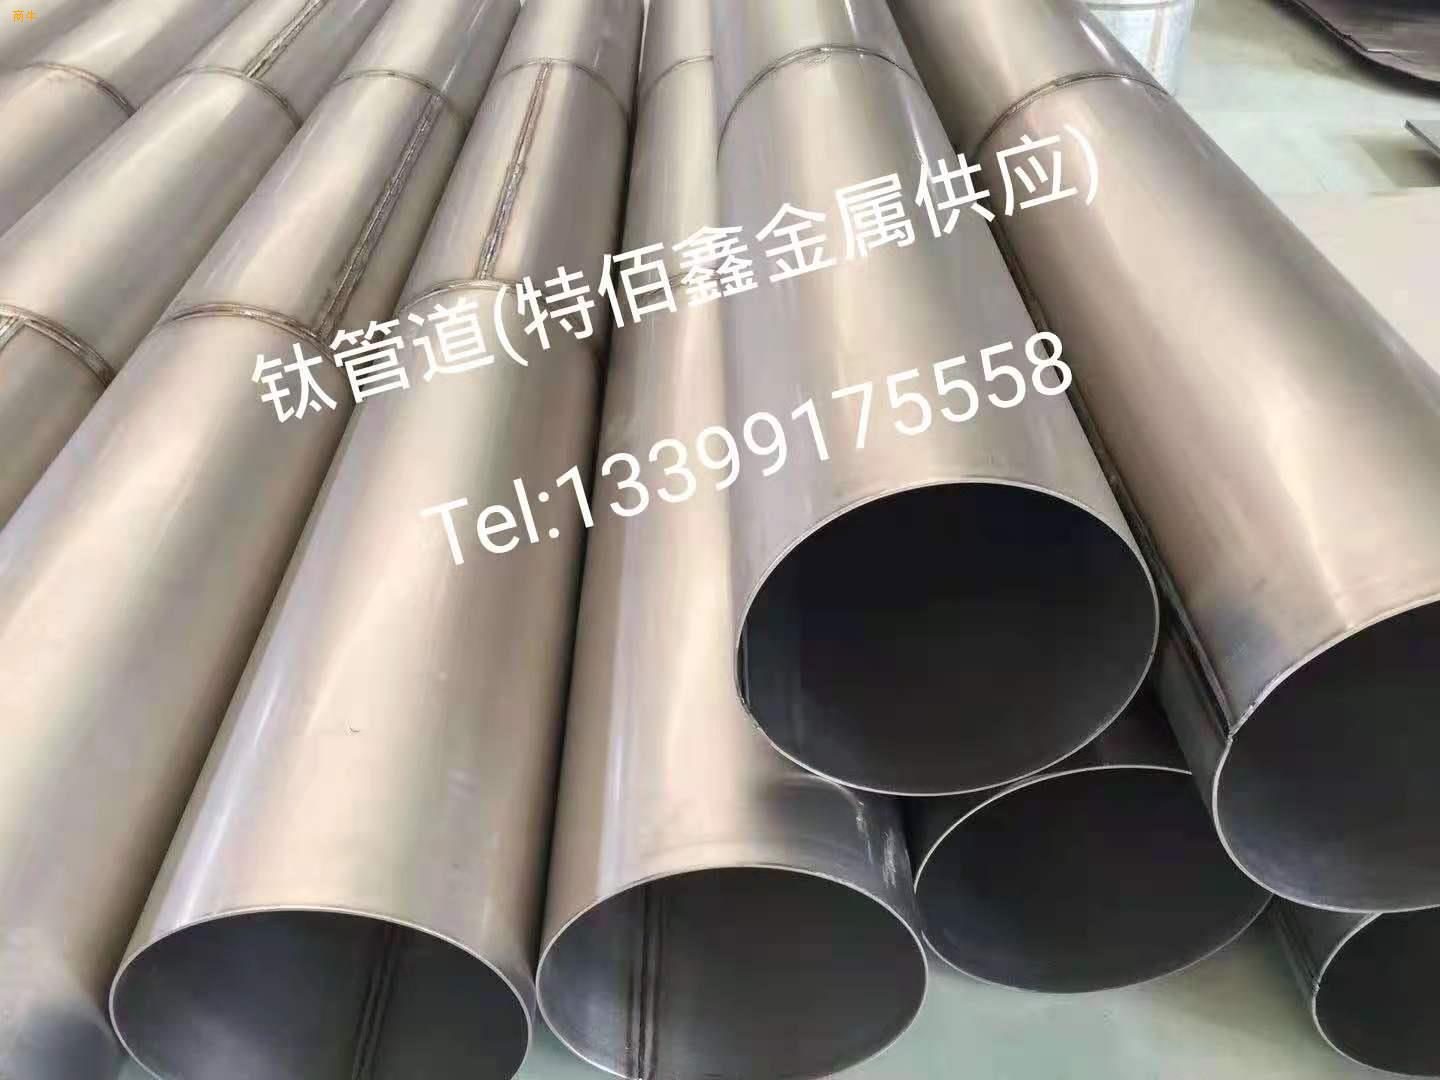 TA1TA2全钛管道纯锆管道定制钛合金管道制造镍管道厂家钛焊管